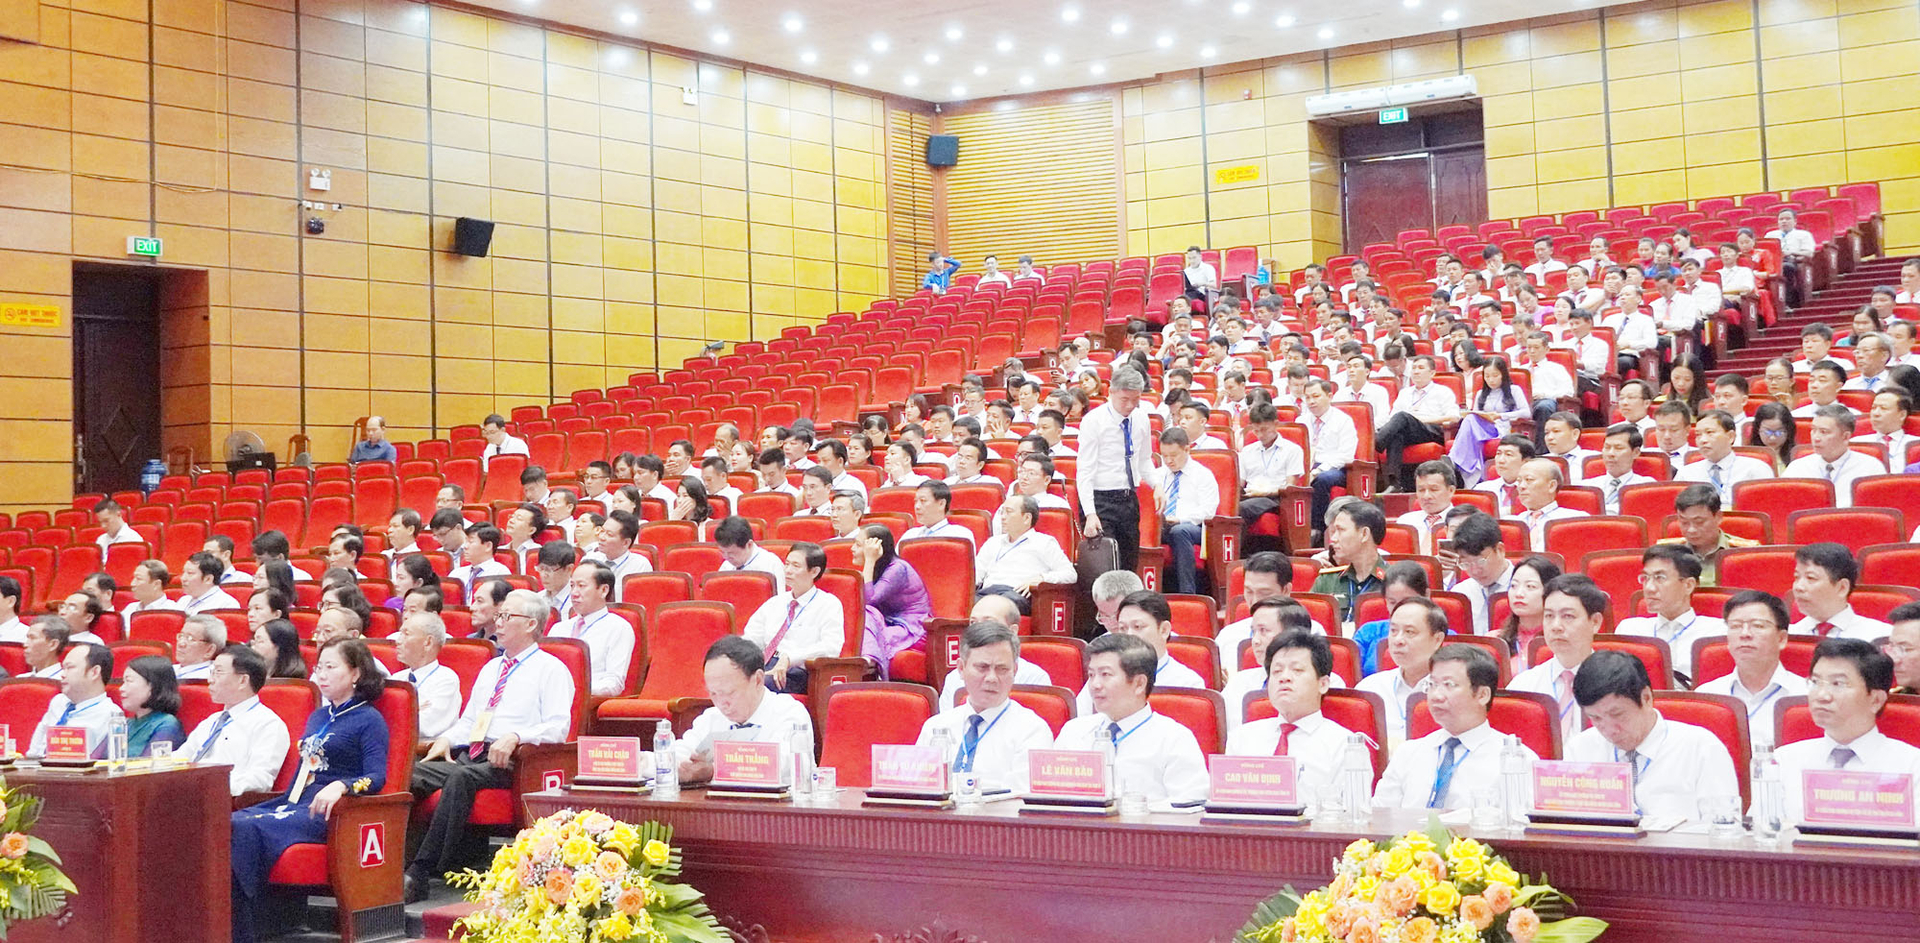 Đại hội đại biểu Hội Nông dân tỉnh Quảng Bình lần thứ XI, nhiệm kỳ 2023-2028, có 254 đại biểu chính thức. Ảnh: P. Phương.